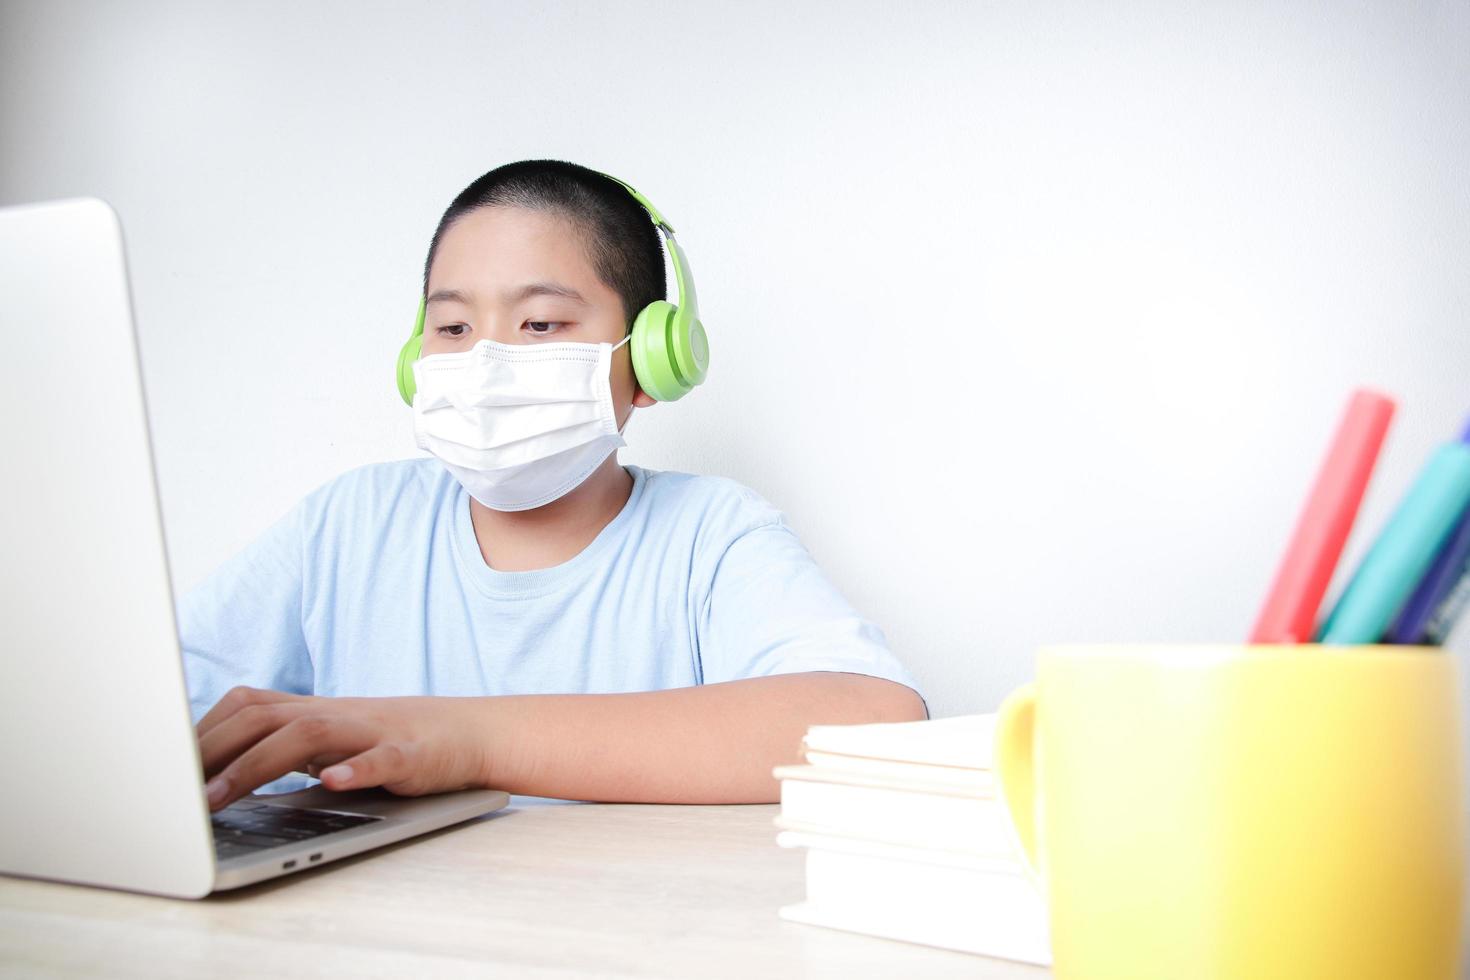 estudantes asiáticos do sexo masculino aprendem on-line em casa por meio de videochamadas, usando seus laptops para se comunicar com seus professores. distanciamento social para reduzir a propagação do coronavírus foto